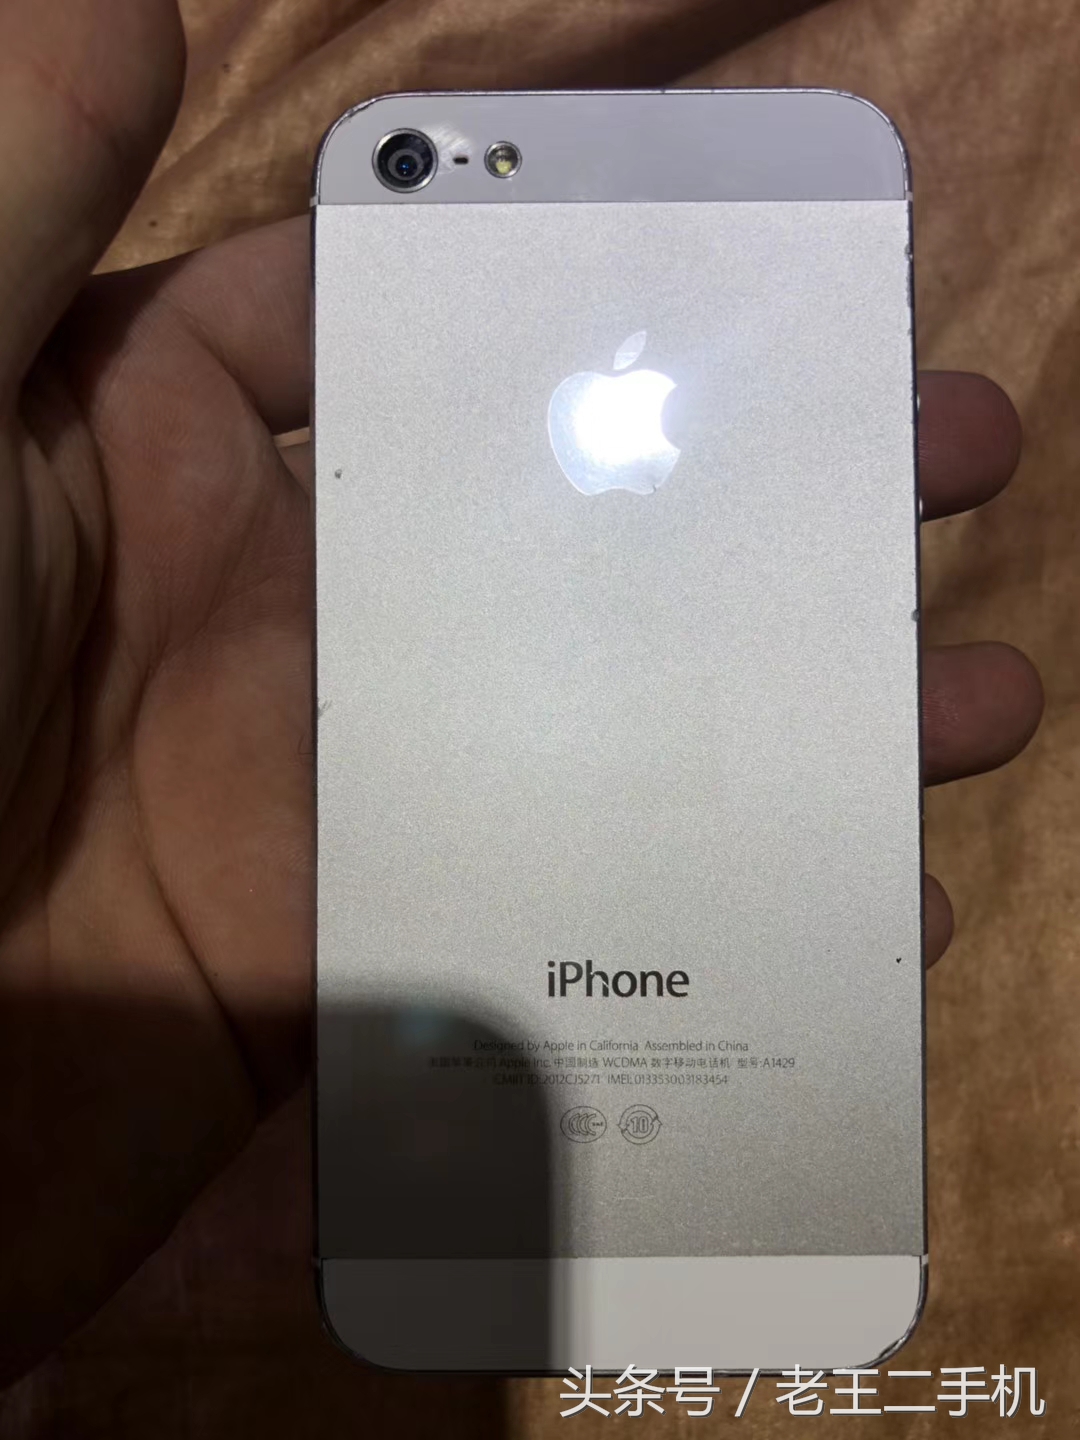 iPhone 5c、iPhone 5，三四百块钱的备用机，就俩字，划算